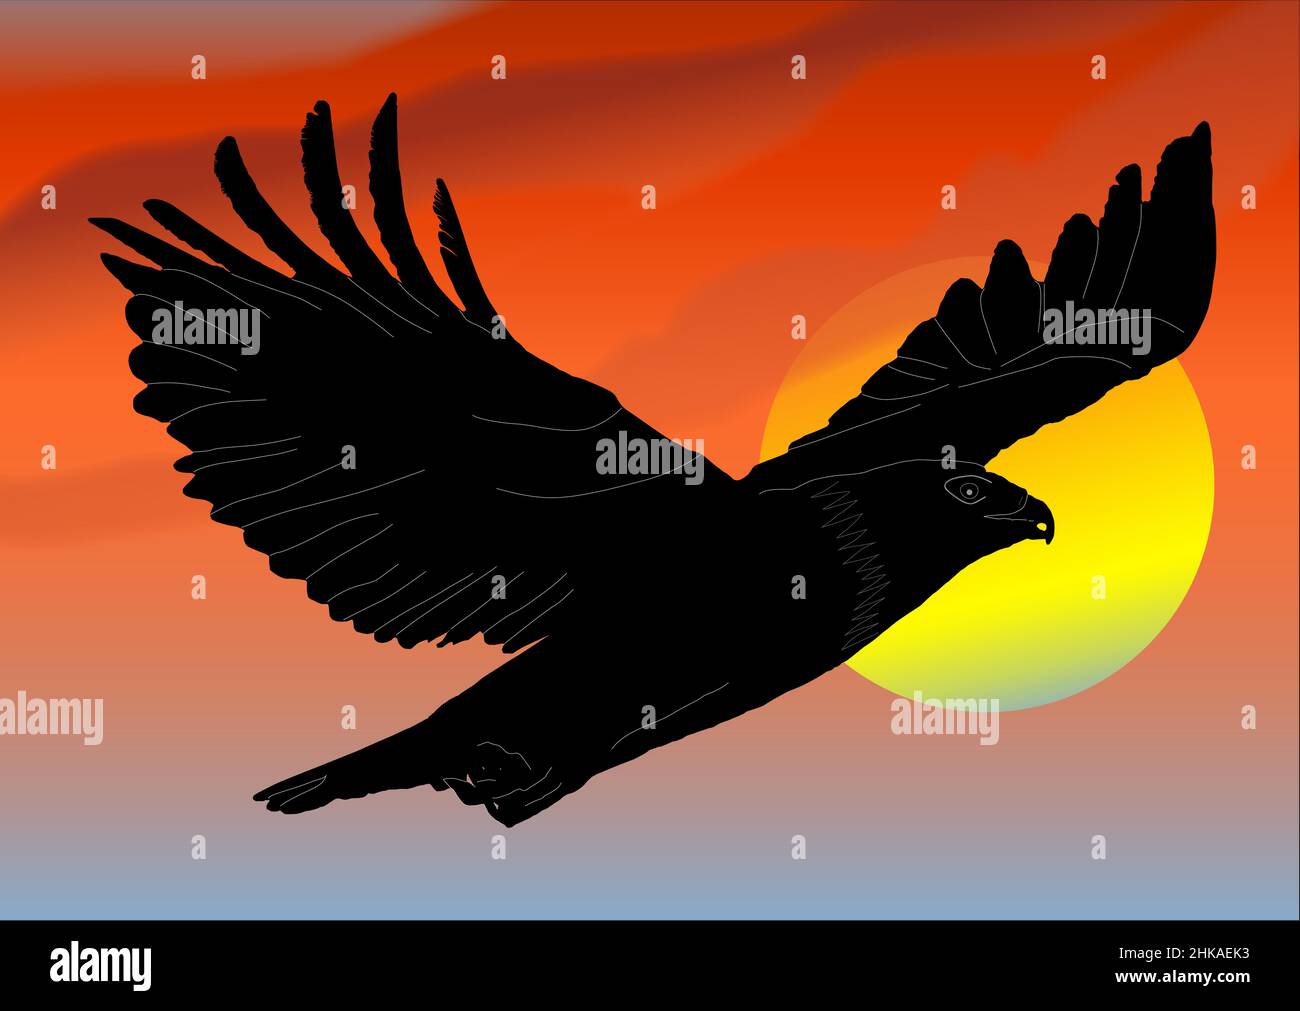 L'aigle s'épare du ciel orange et du soleil couchant Illustration de Vecteur